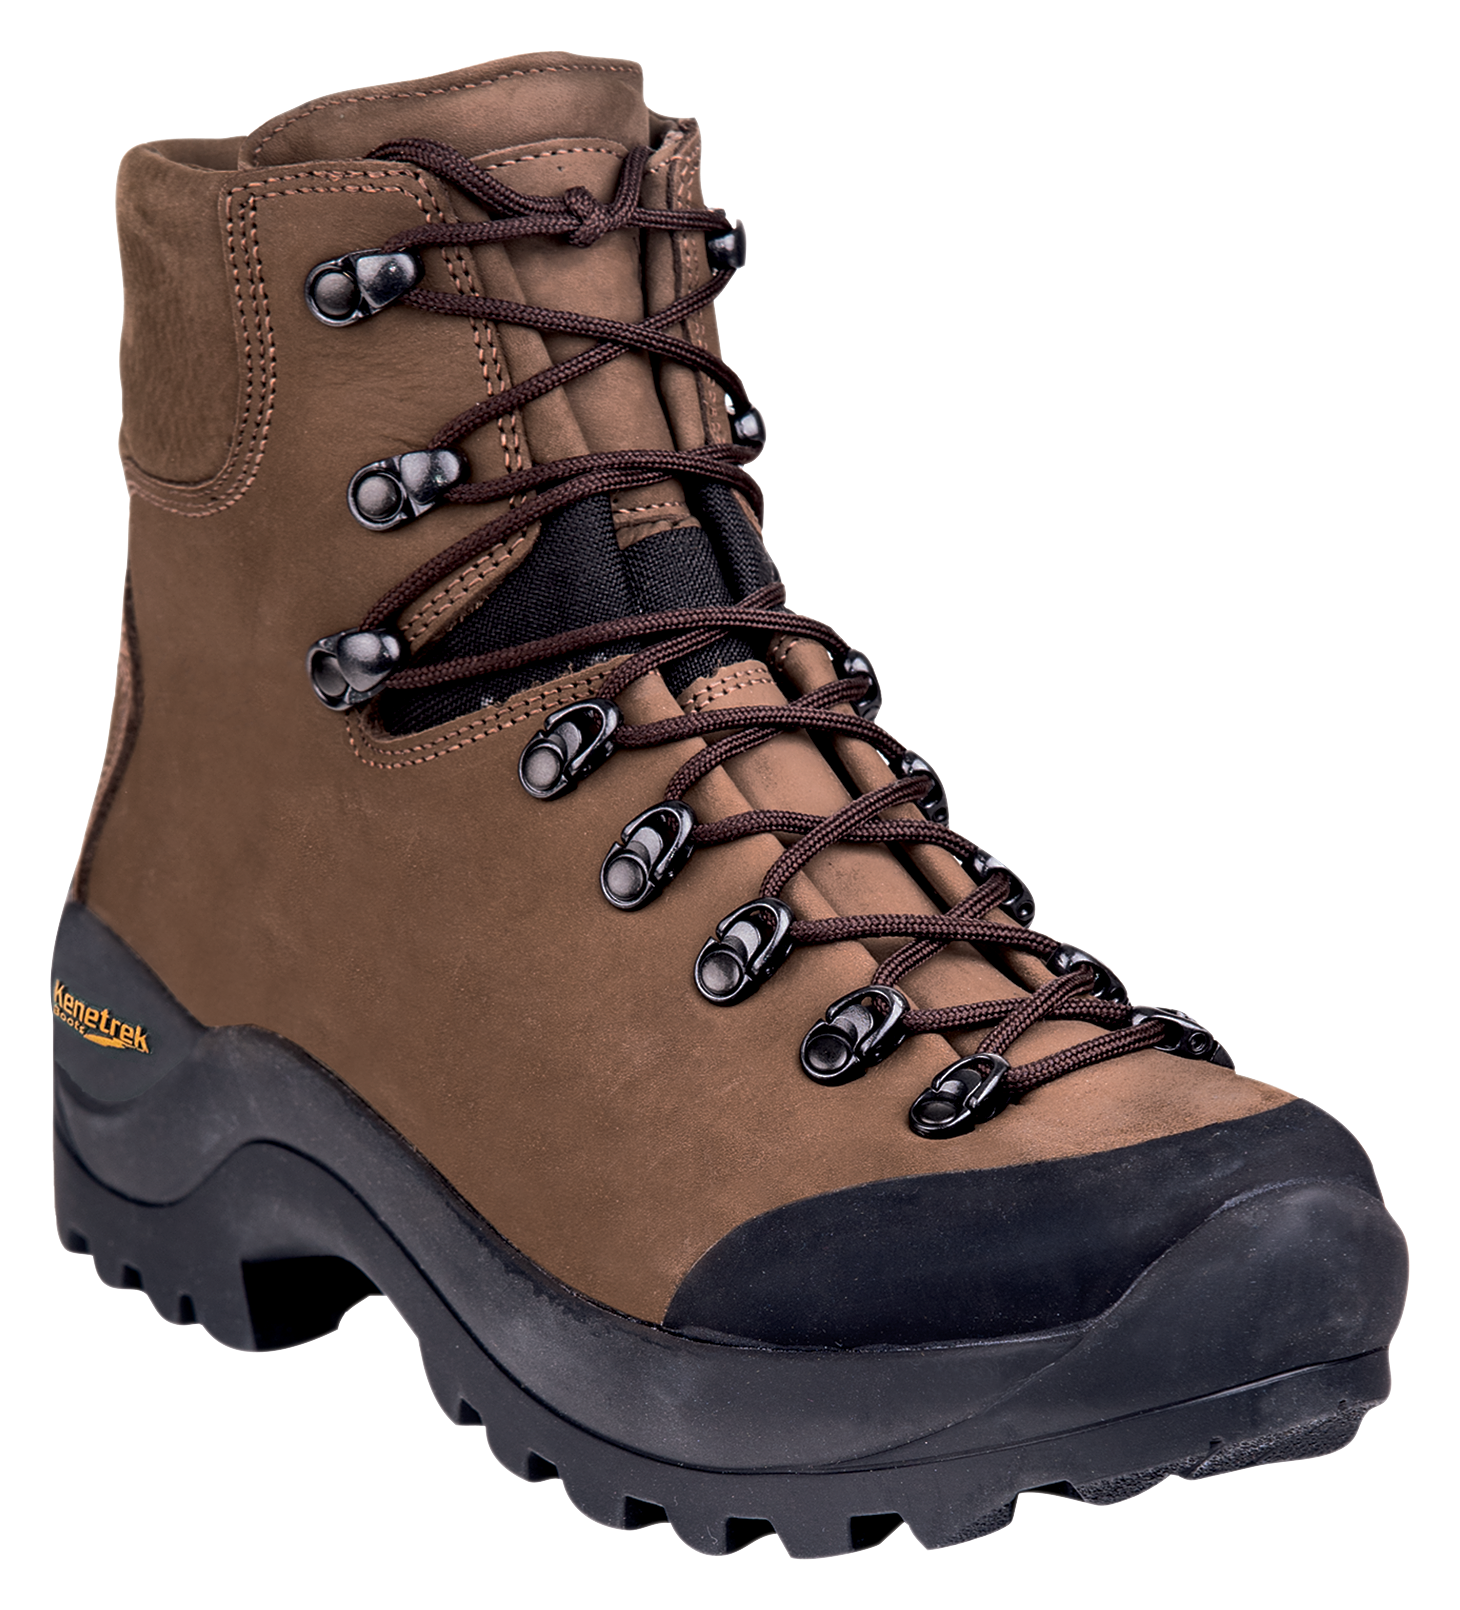 Kenetrek Desert Guide Hunting Boots for Men - Brown - 13W